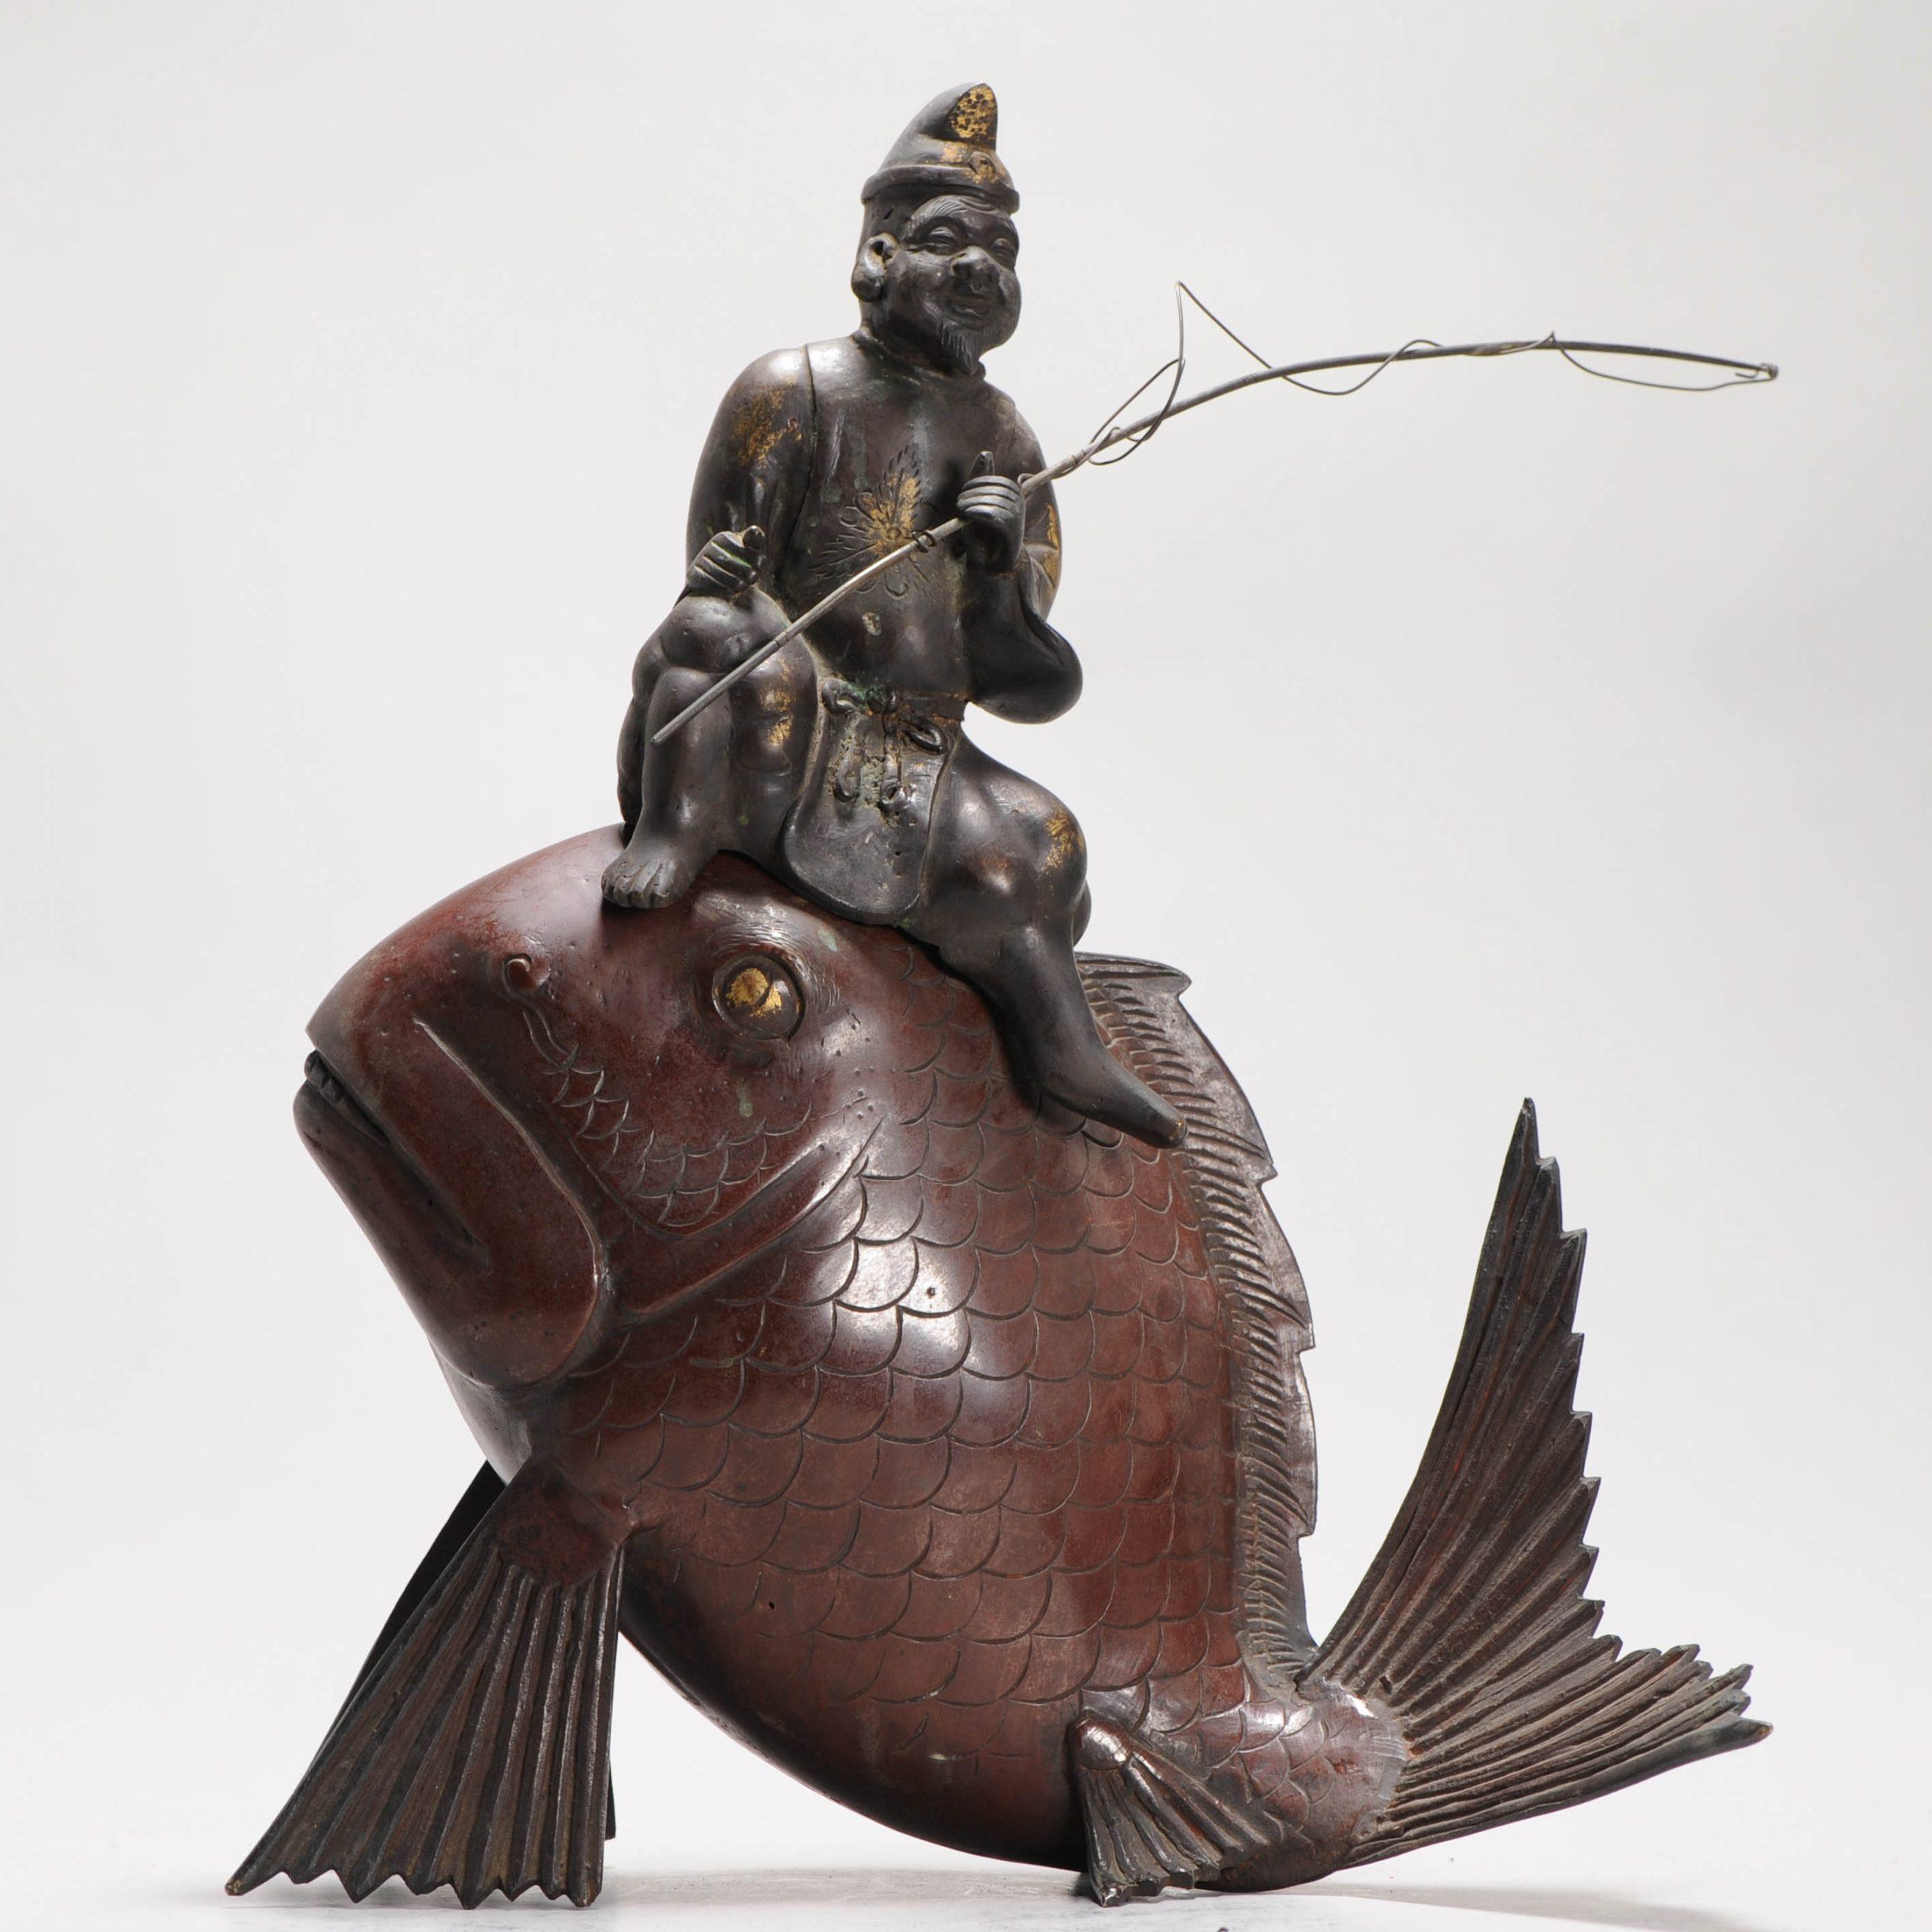 eine sehr schöne Statue eines Fischers auf einem Fisch

Bedingung
40 x 35 cm. Guter Zustand mit Gebrauchsspuren.
Zeitraum
19. Jahrhundert 